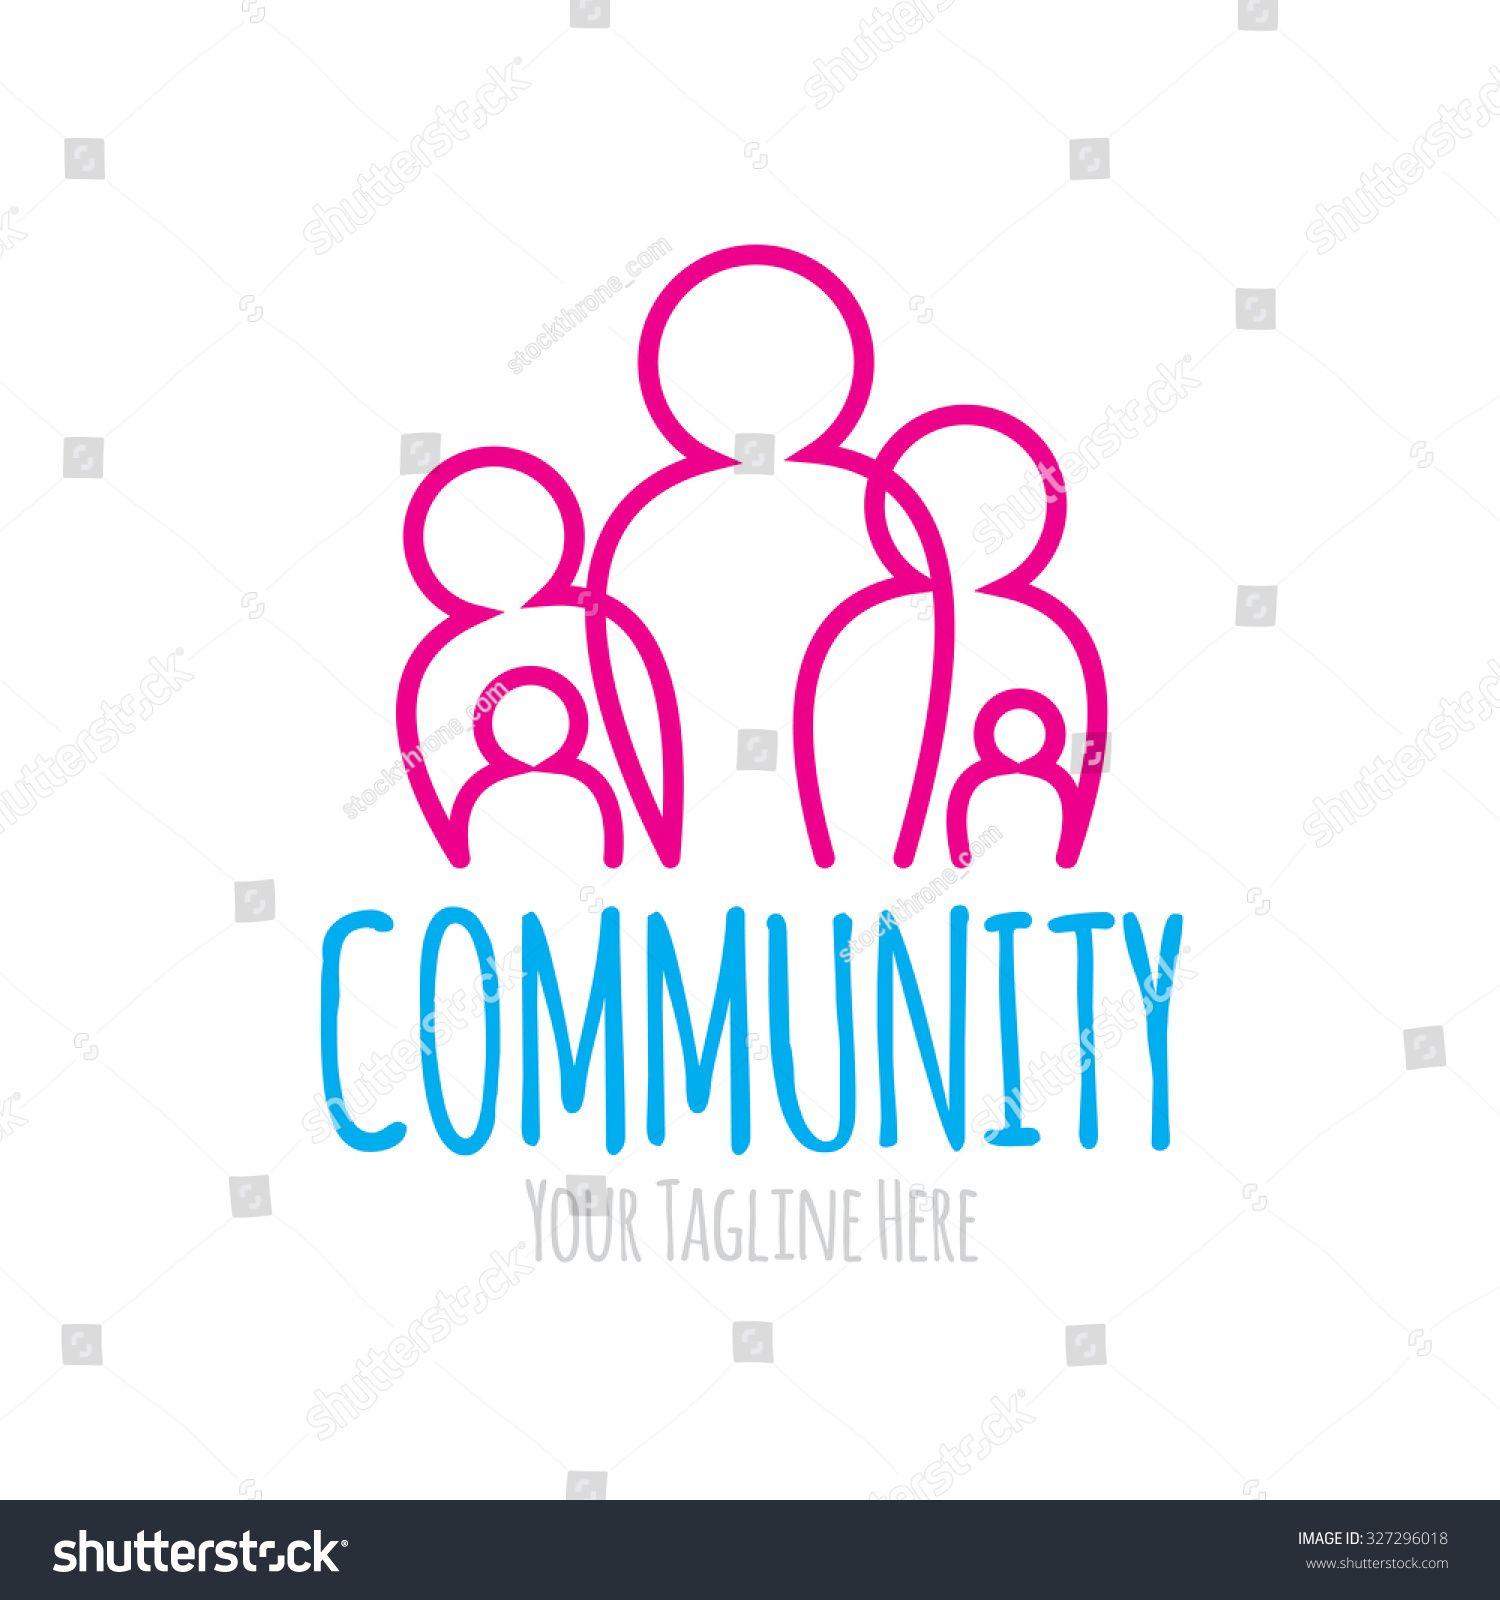 Community Logo - Community Logos